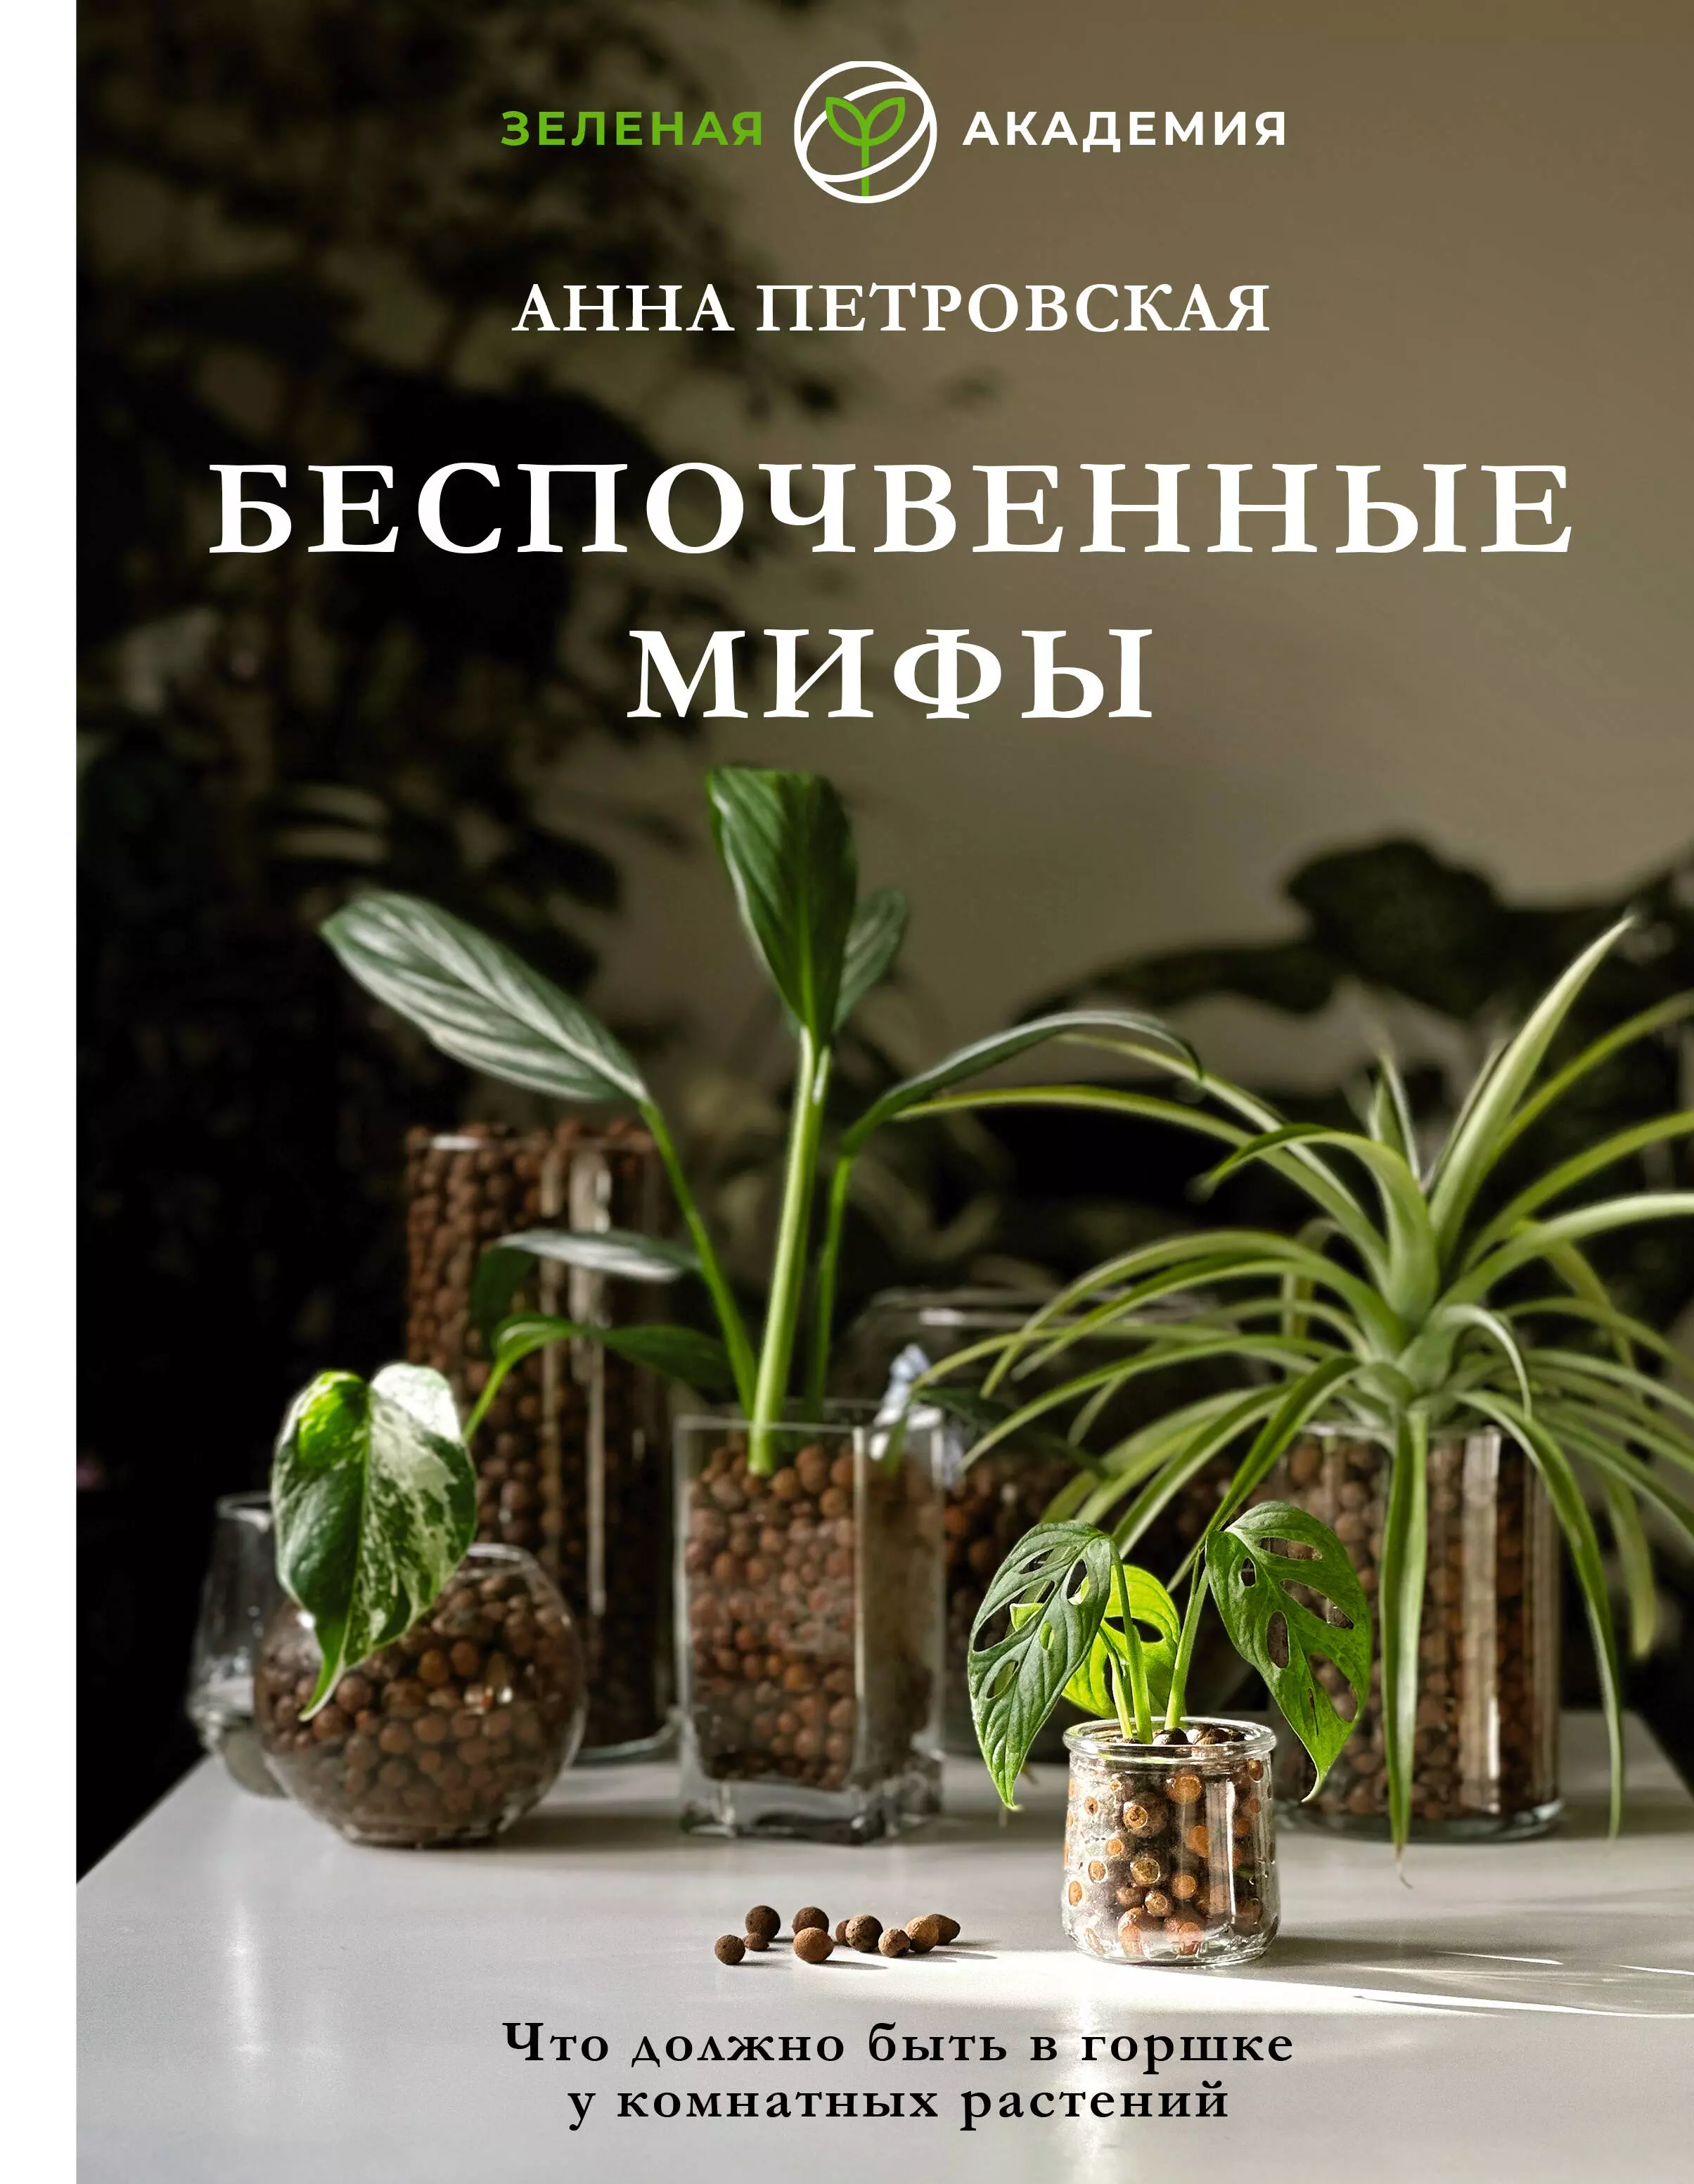 Петровская Анна - Что должно быть в горшке у комнатных растений. Беспочвенные мифы